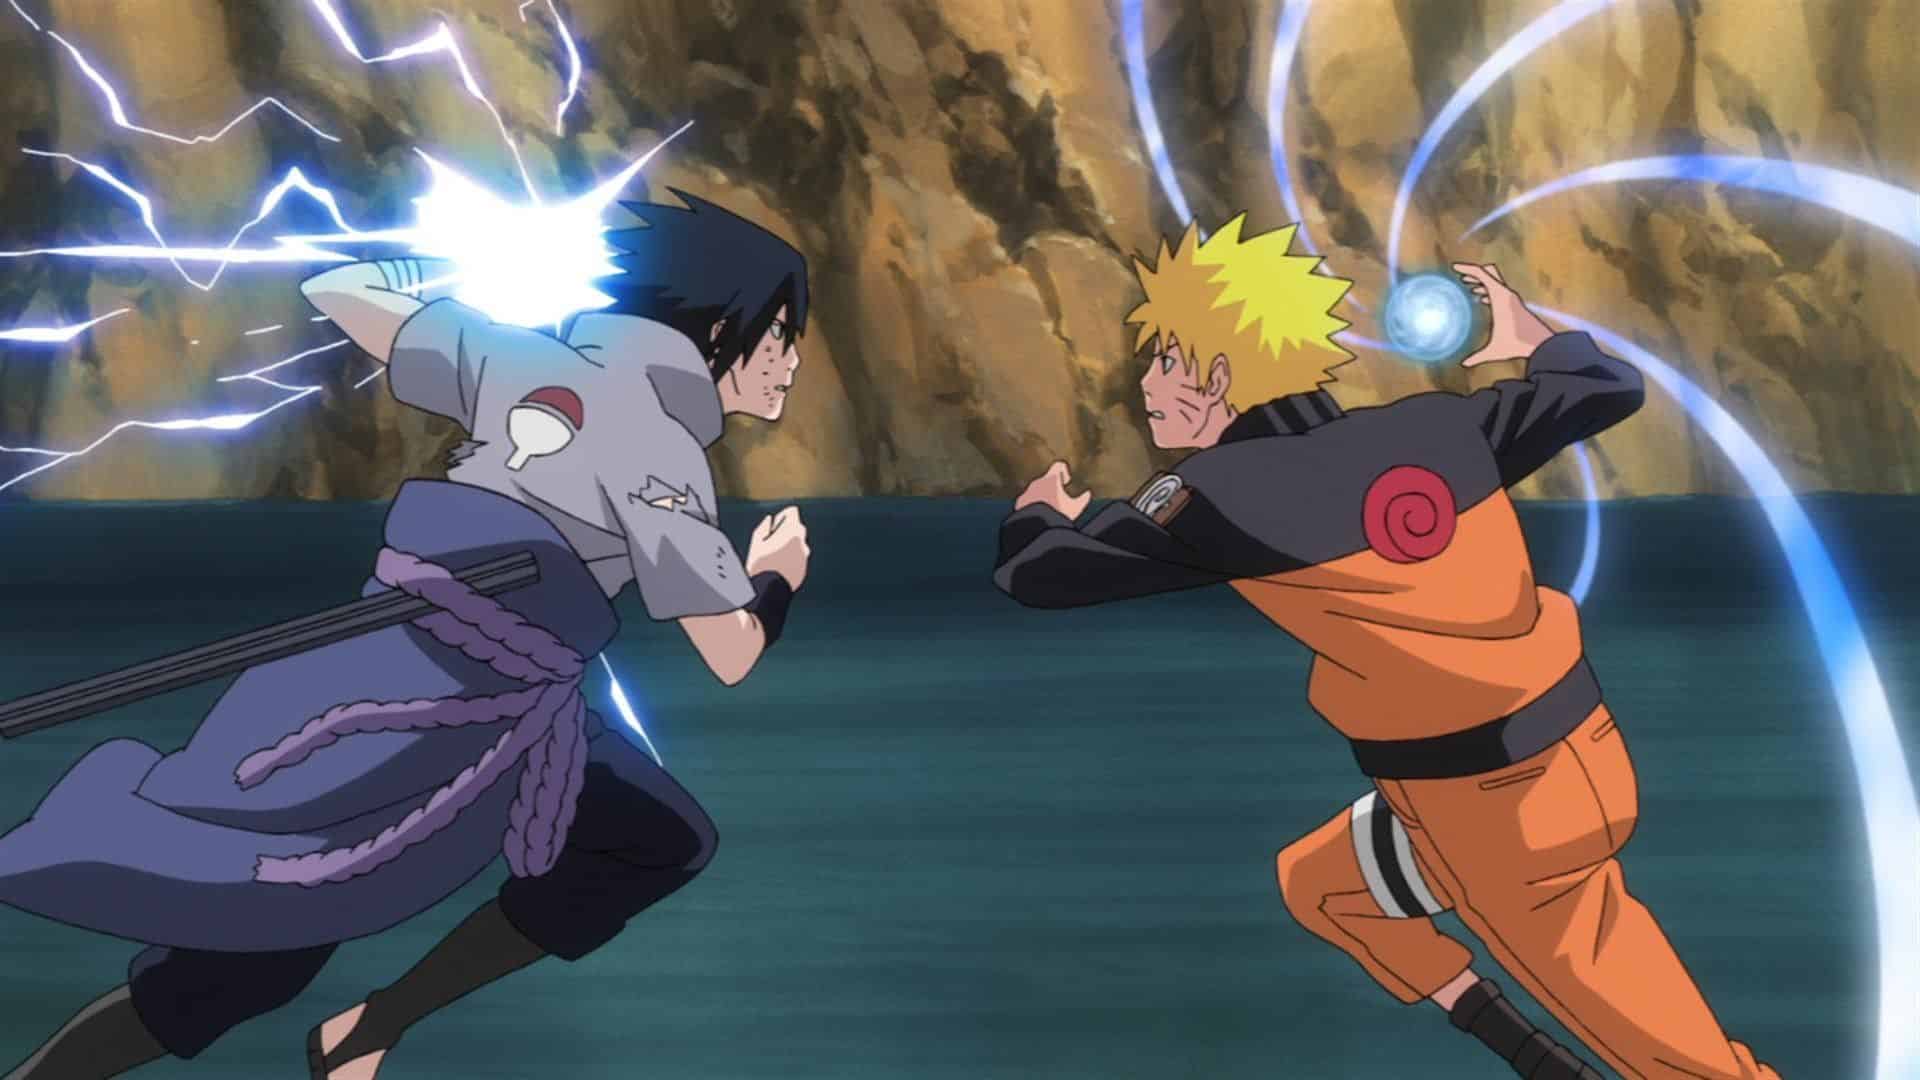 Hình ảnh Naruto và Sasuke mới nhất sẽ thôi thúc bạn đến mức muốn biết thêm về cuộc phiêu lưu hấp dẫn này. Xem những hình ảnh đầy màu sắc và độc đáo để nhận được cảm hứng và năng lượng mới, và chiêm ngưỡng sự kết hợp tuyệt vời giữa hai nhân vật ý nghĩa này.